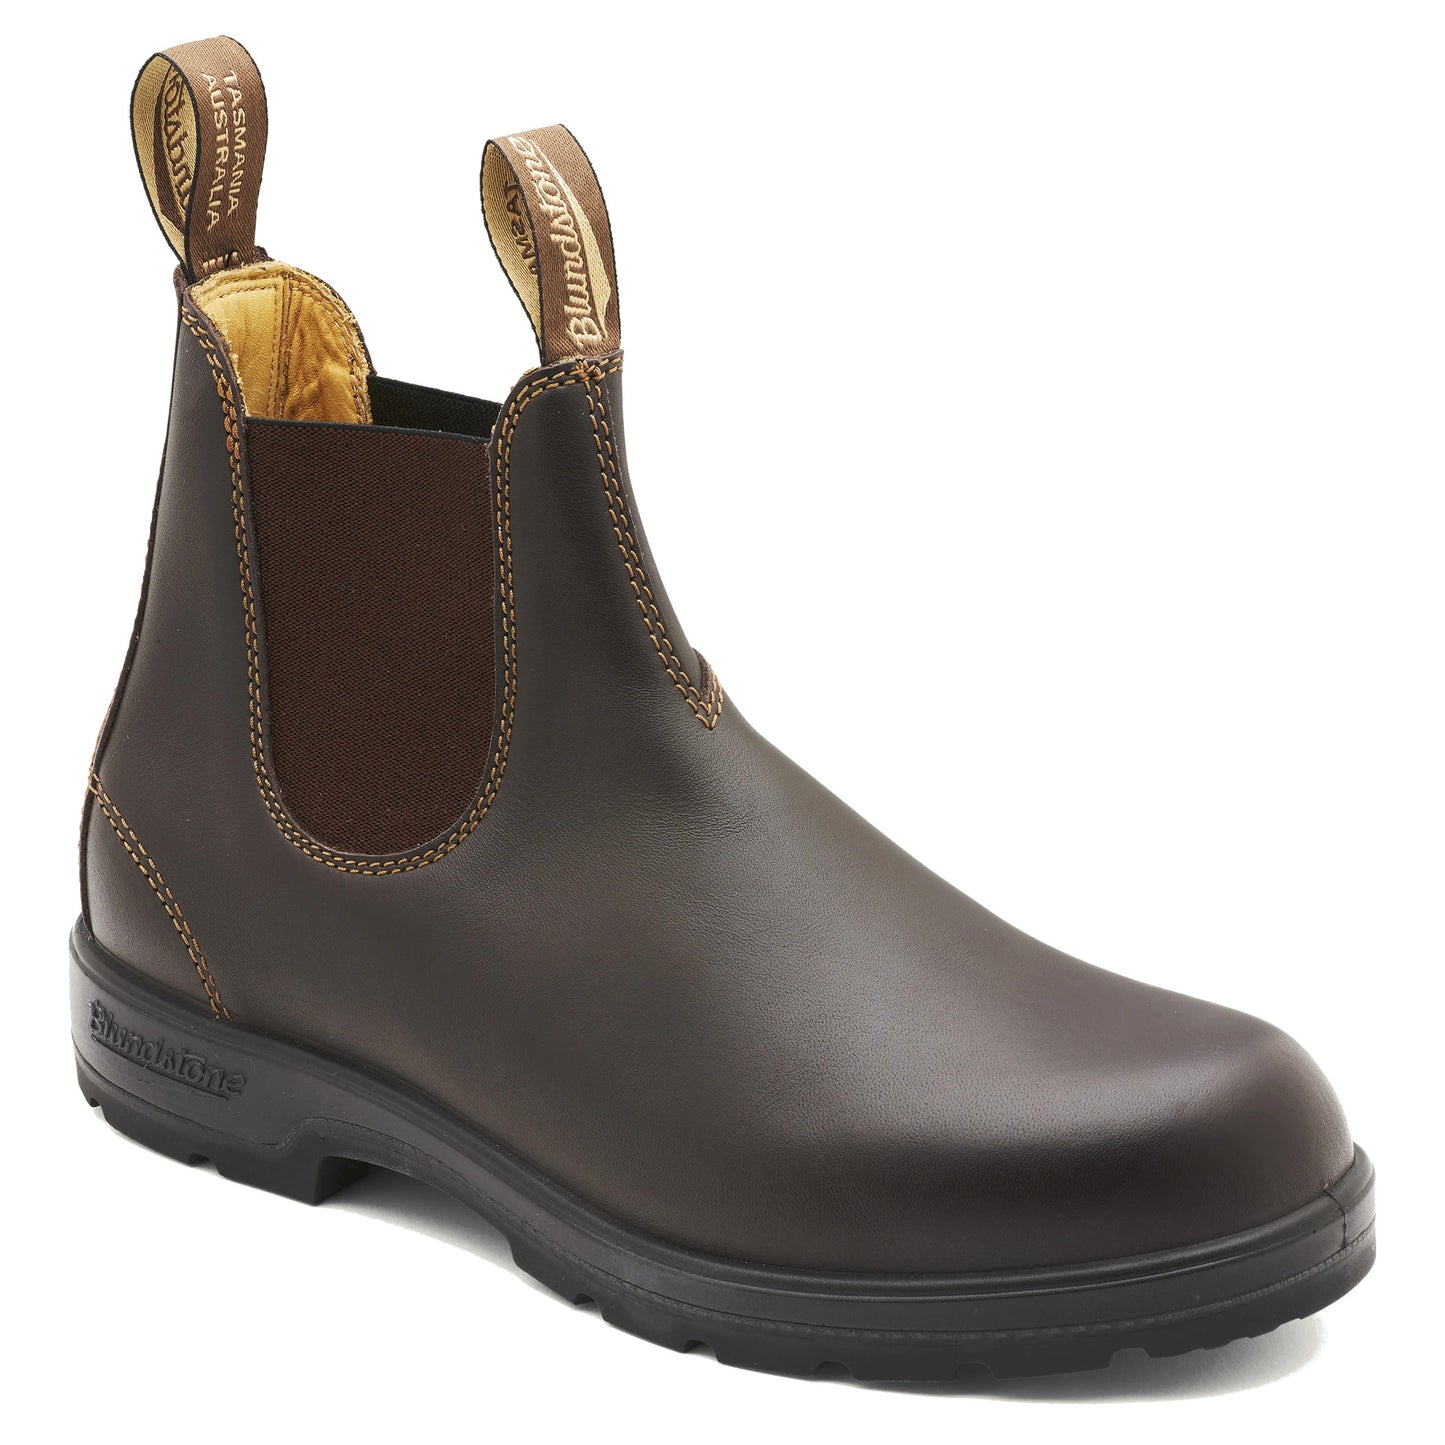 Blundstone 550 Chelsea Boots - Walnut